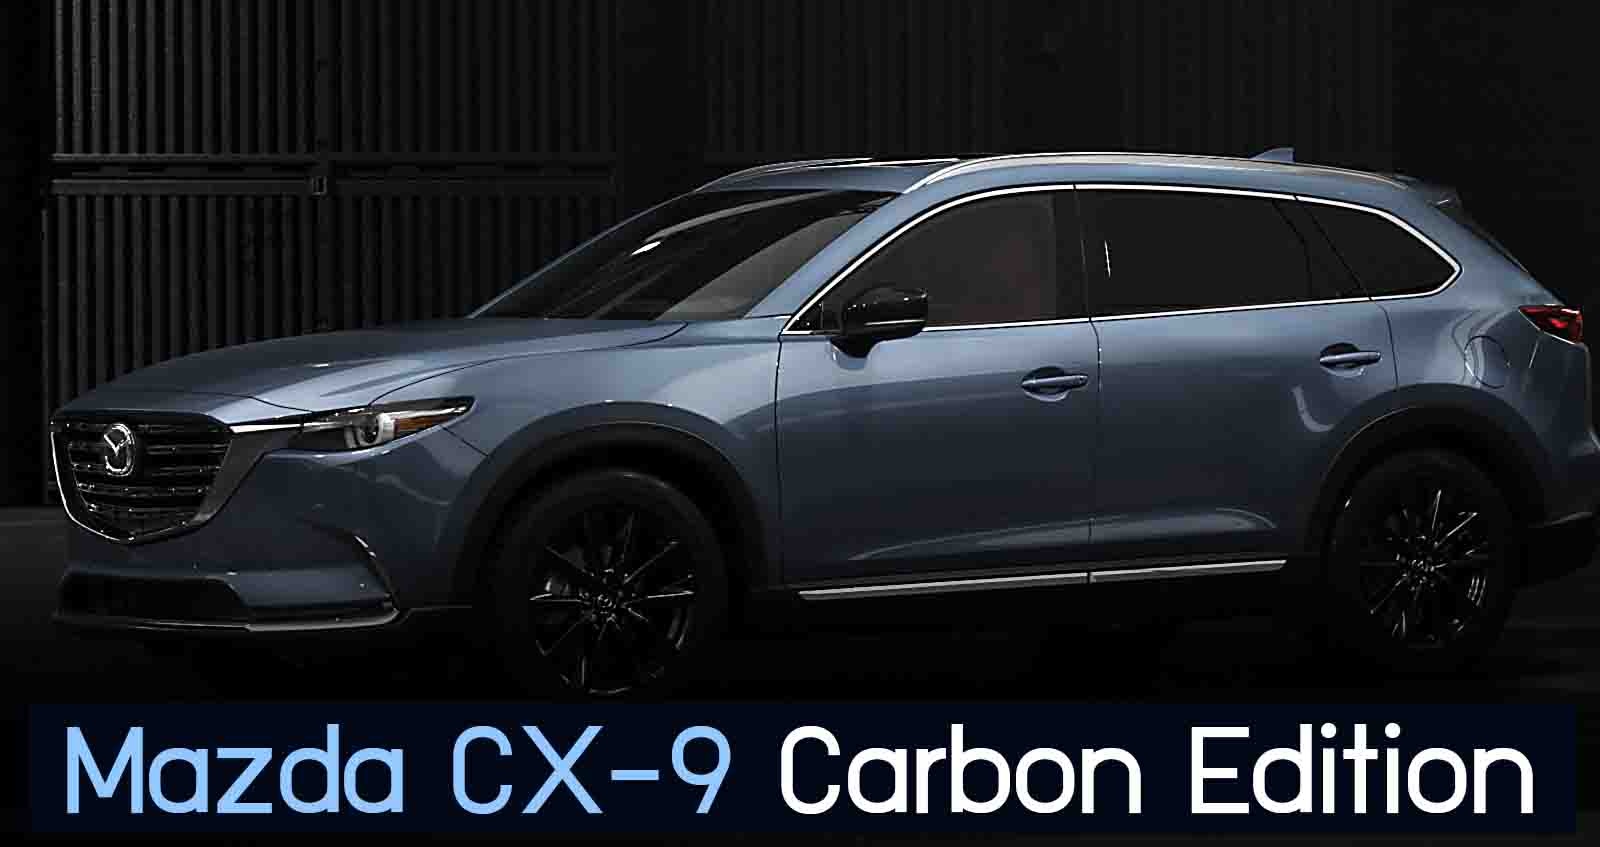 Mazda CX-9 Carbon Edition รุ่นพิเศษ พี่ใหญ่ในรุ่น ราคา 1.37 ล้านบาท